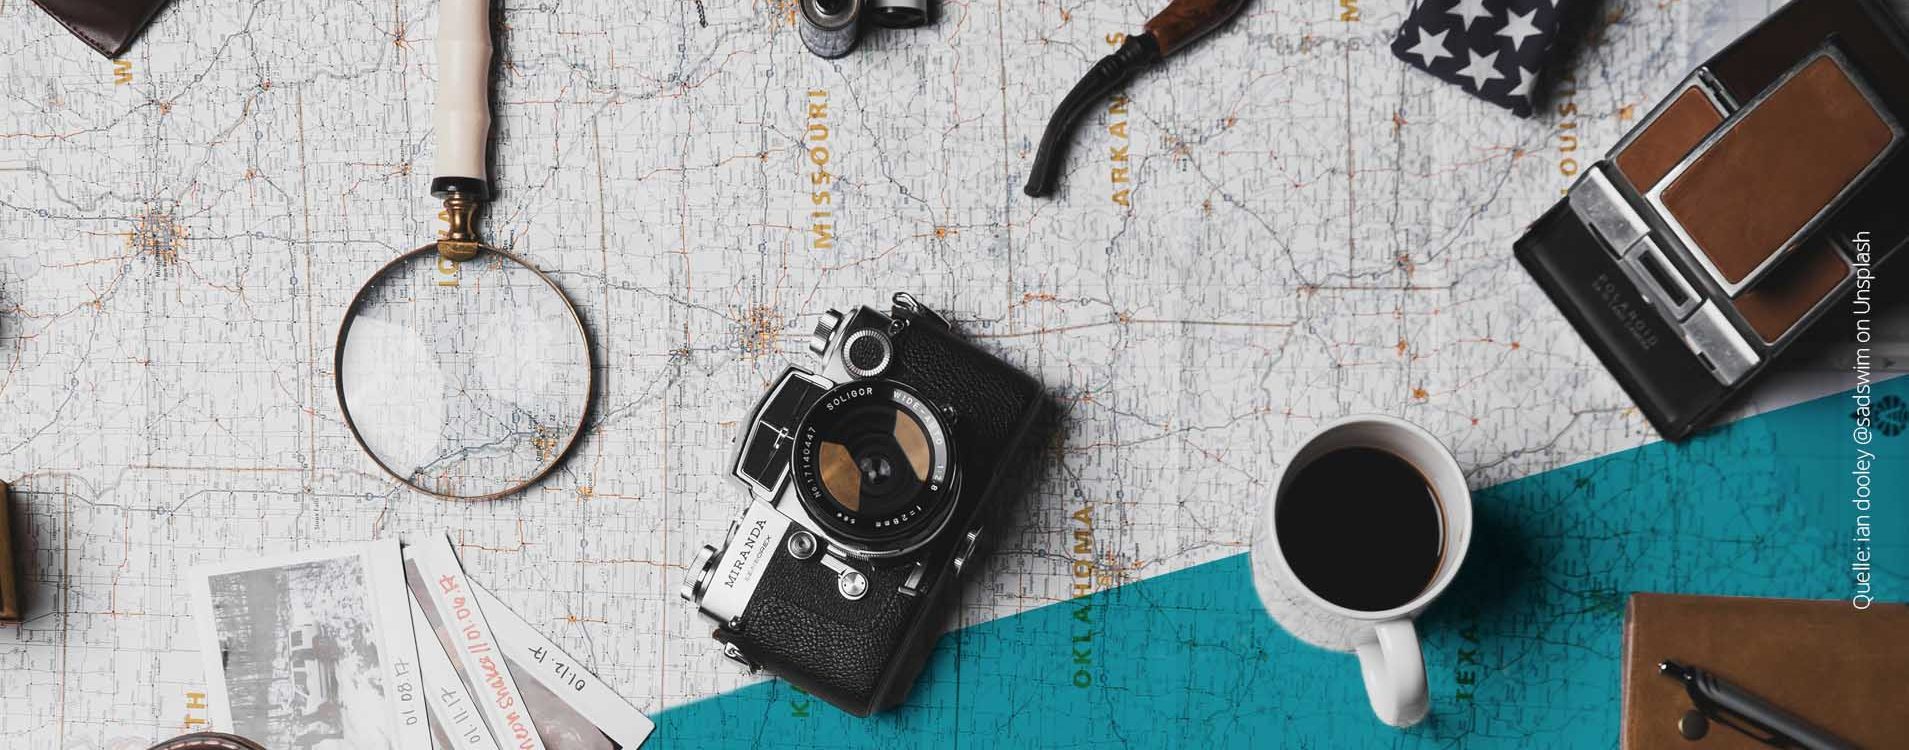 Gegenstände, wie eine Kamera, eine Lupe, eine Kaffeetasse und Polaroidfotos liegen ausgebreitet auf einer Landkarte